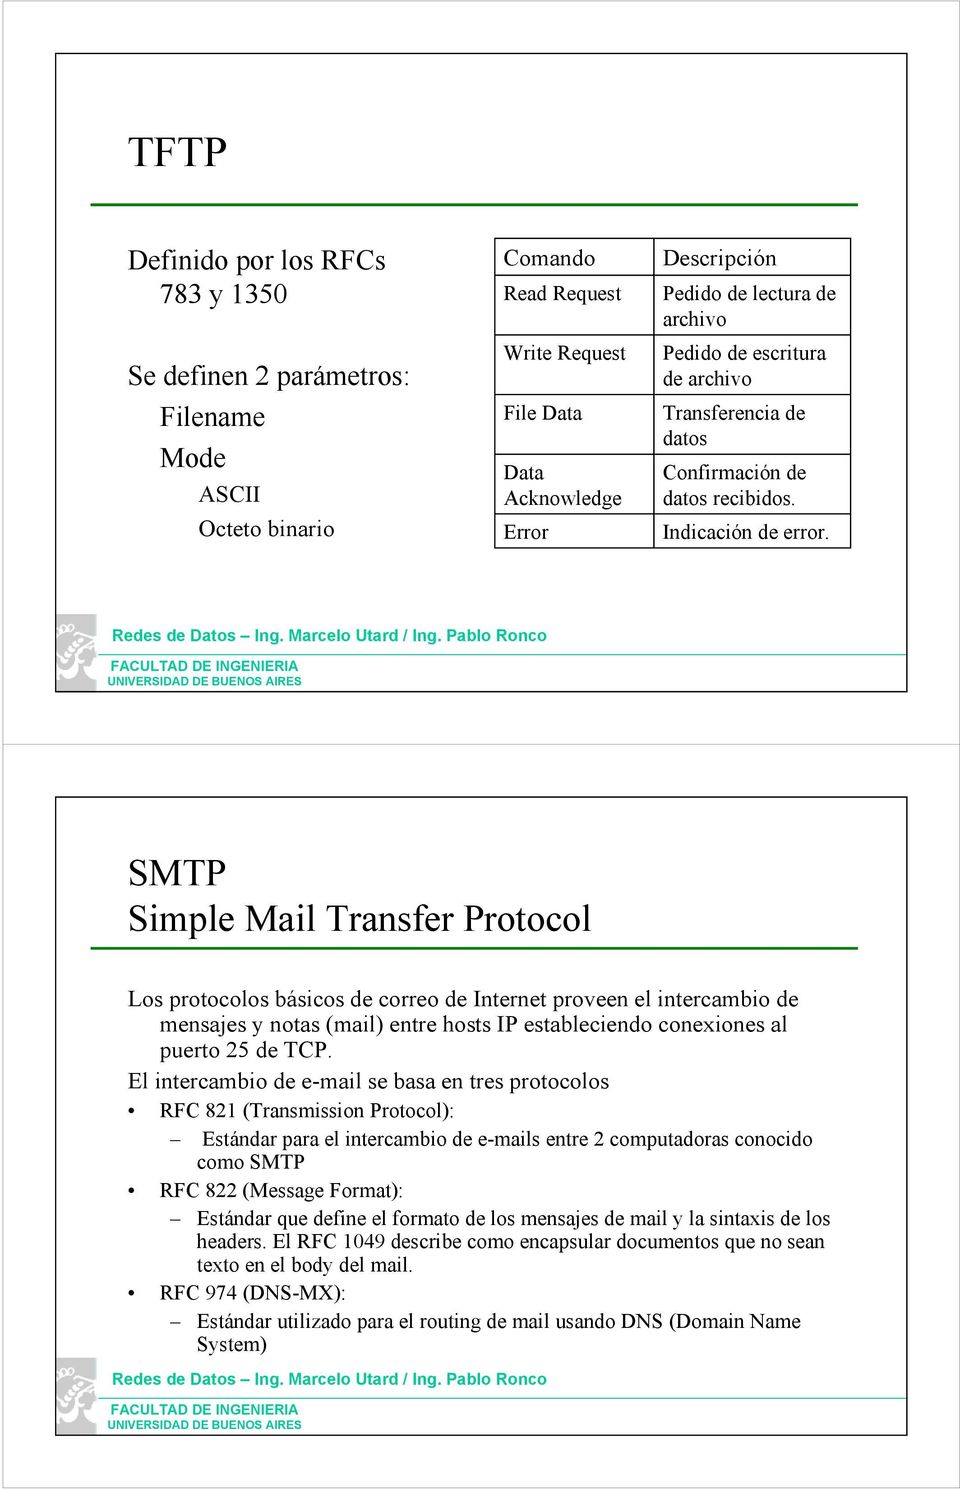 SMTP Simple Mail Transfer Protocol Los protocolos básicos de correo de Internet proveen el intercambio de mensajes y notas (mail) entre hosts IP estableciendo conexiones al puerto 25 de TCP.